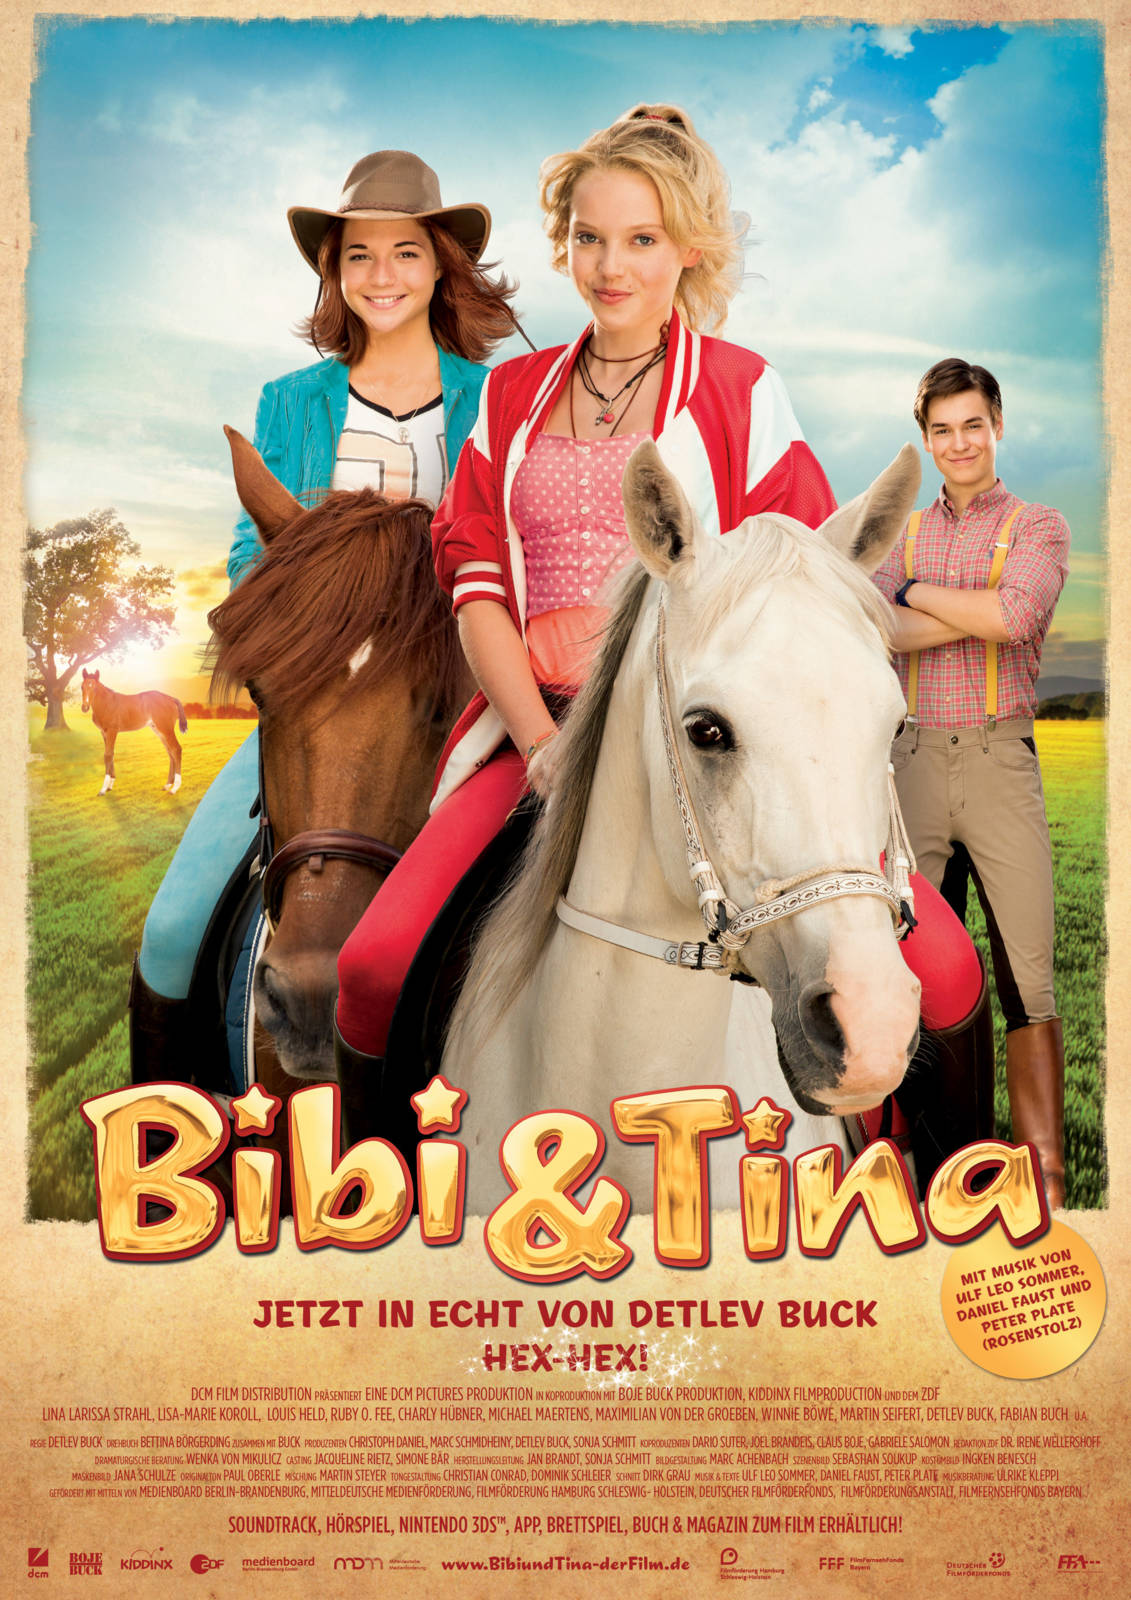 Bibi és Tina - A nagy verseny